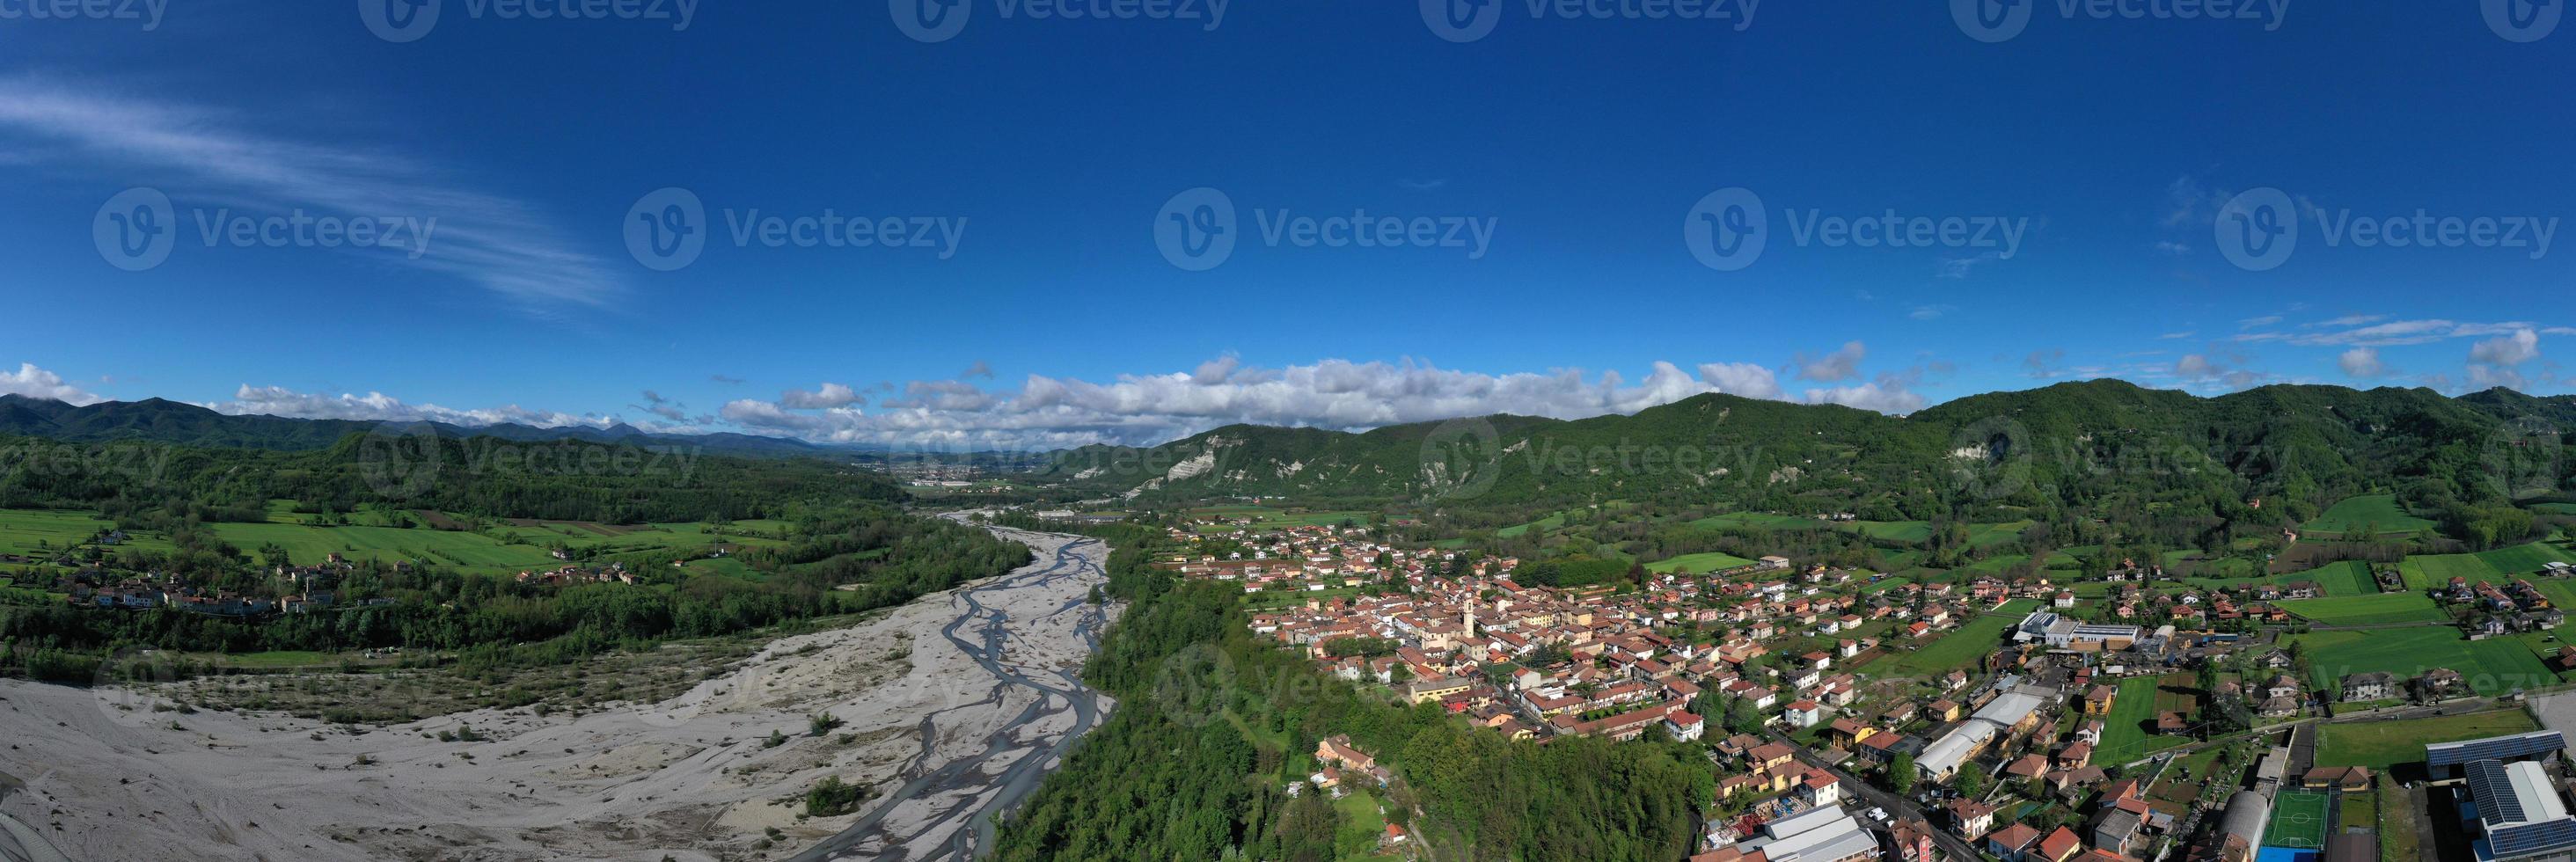 Borghetto di Borbera Pemonte Italy Village aerial View Panorama photo